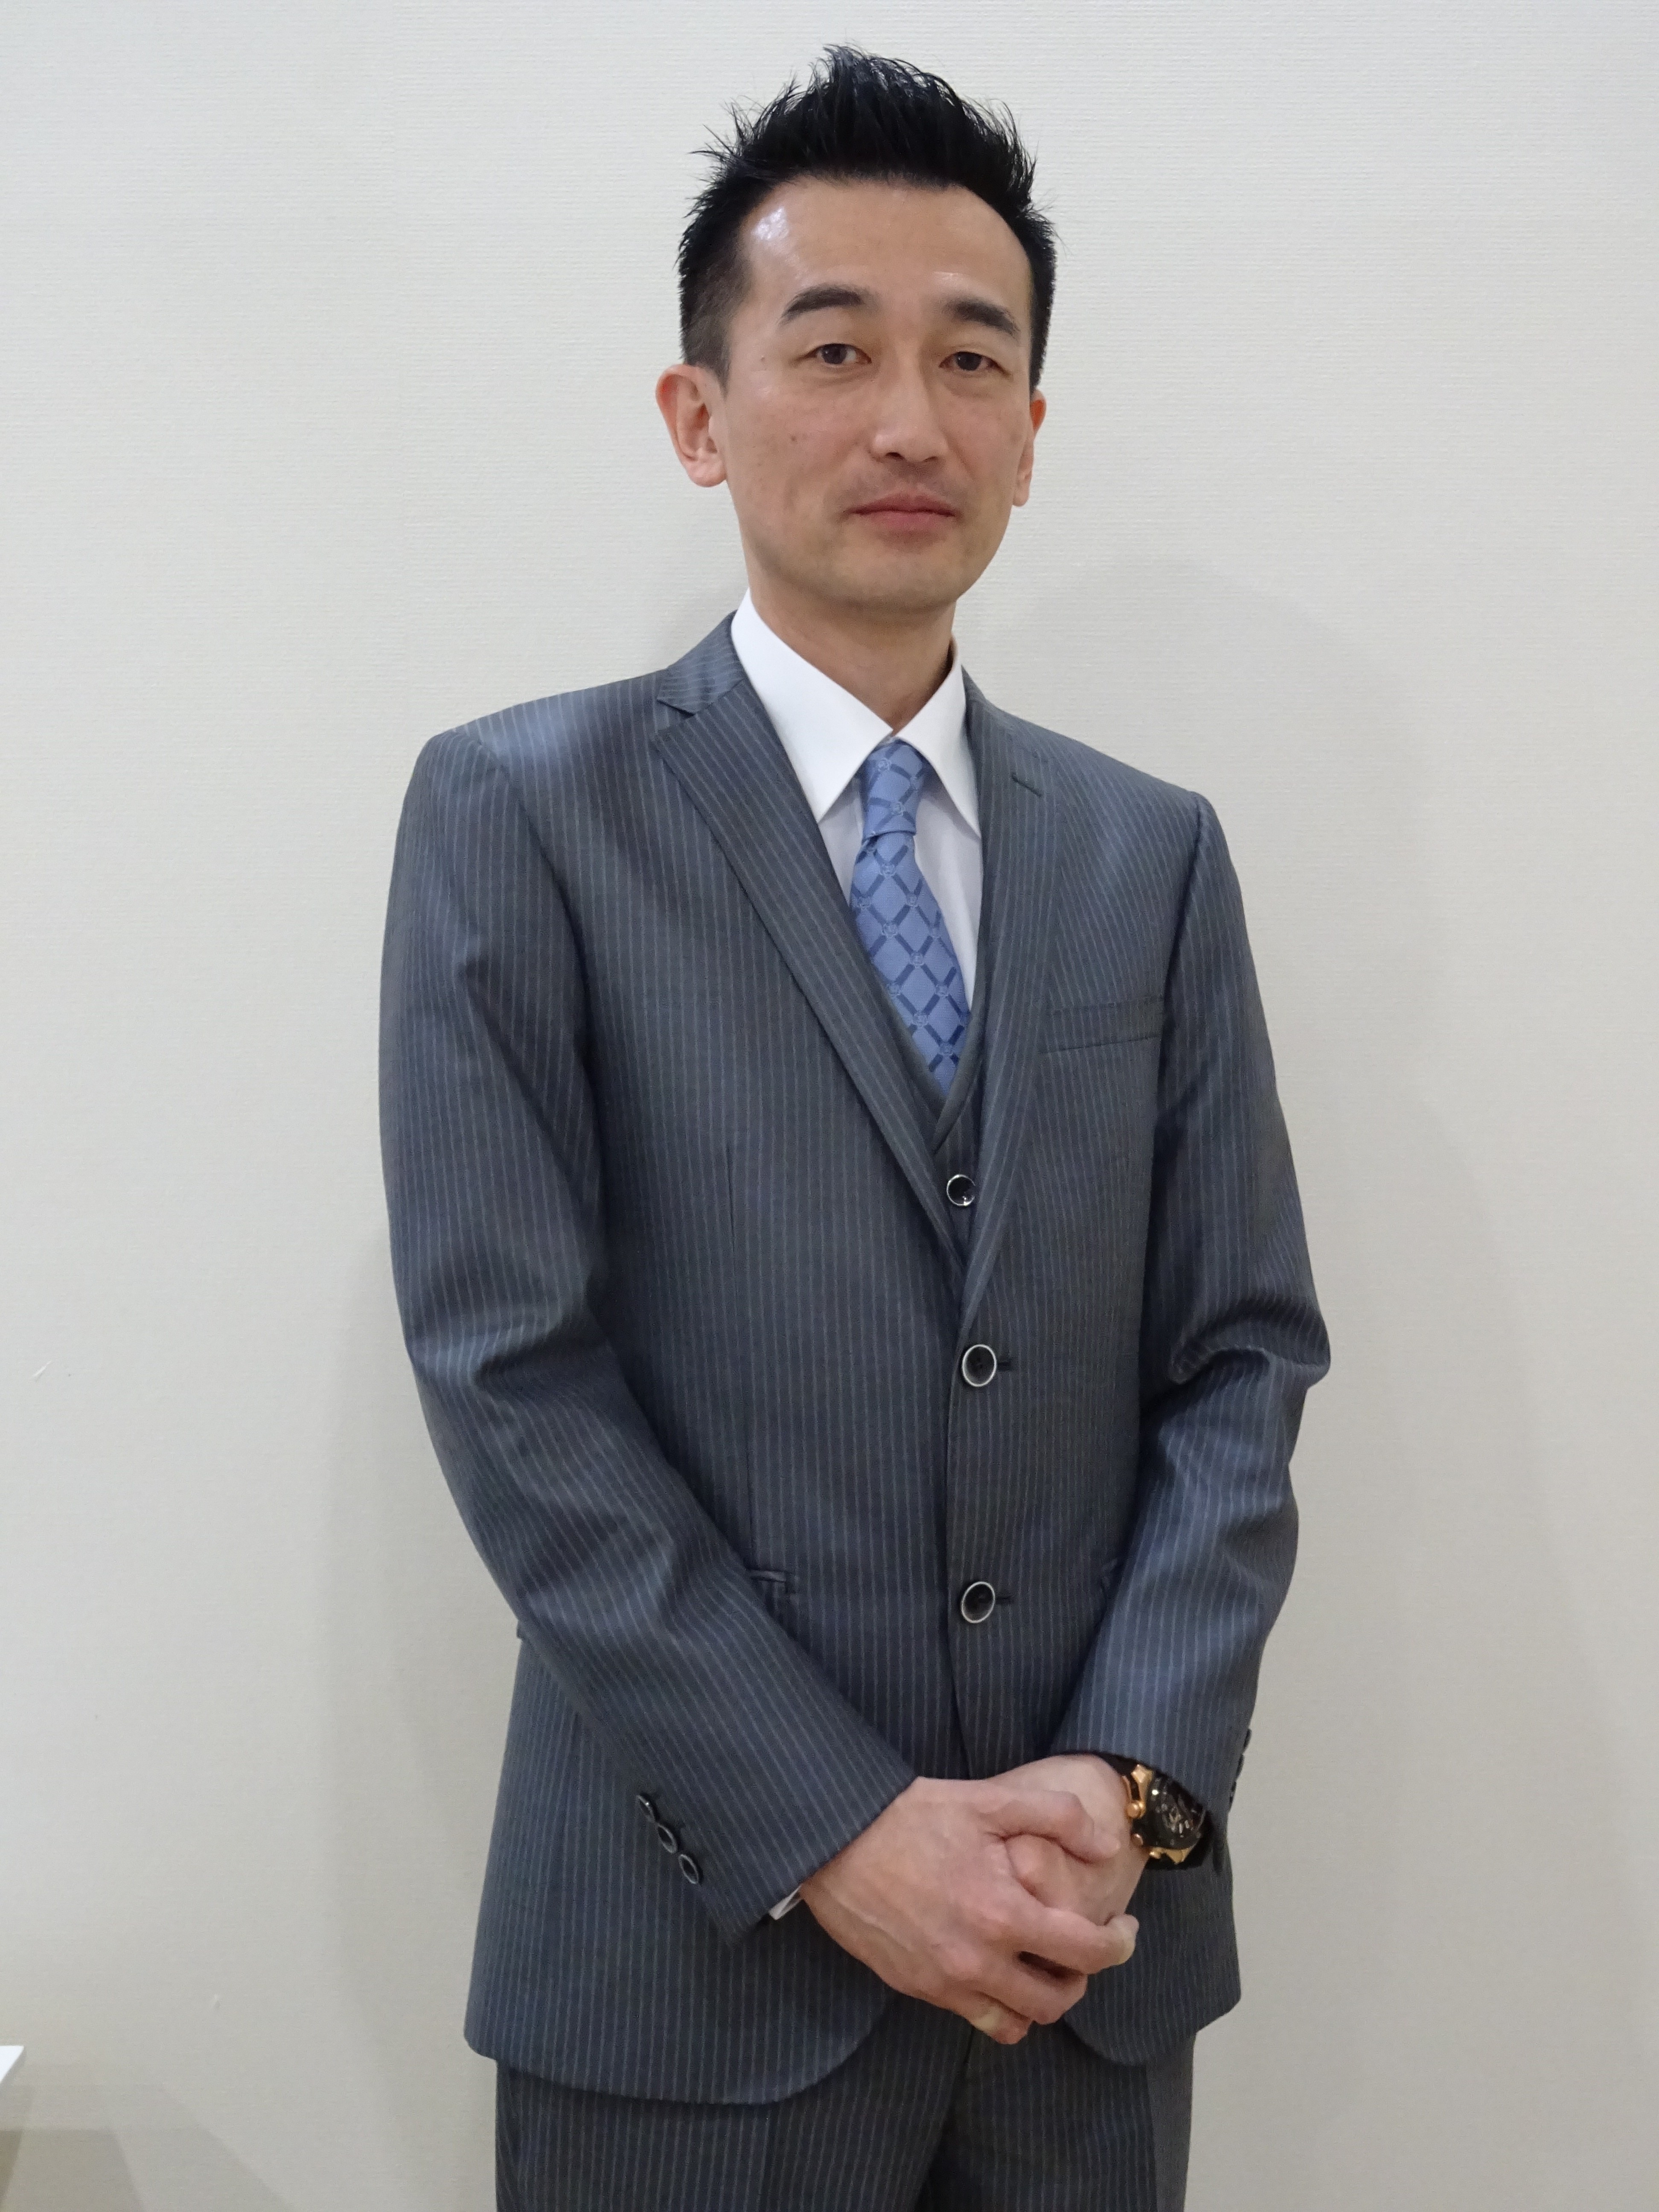 Yasuhiro Yamamoto, president and CEO